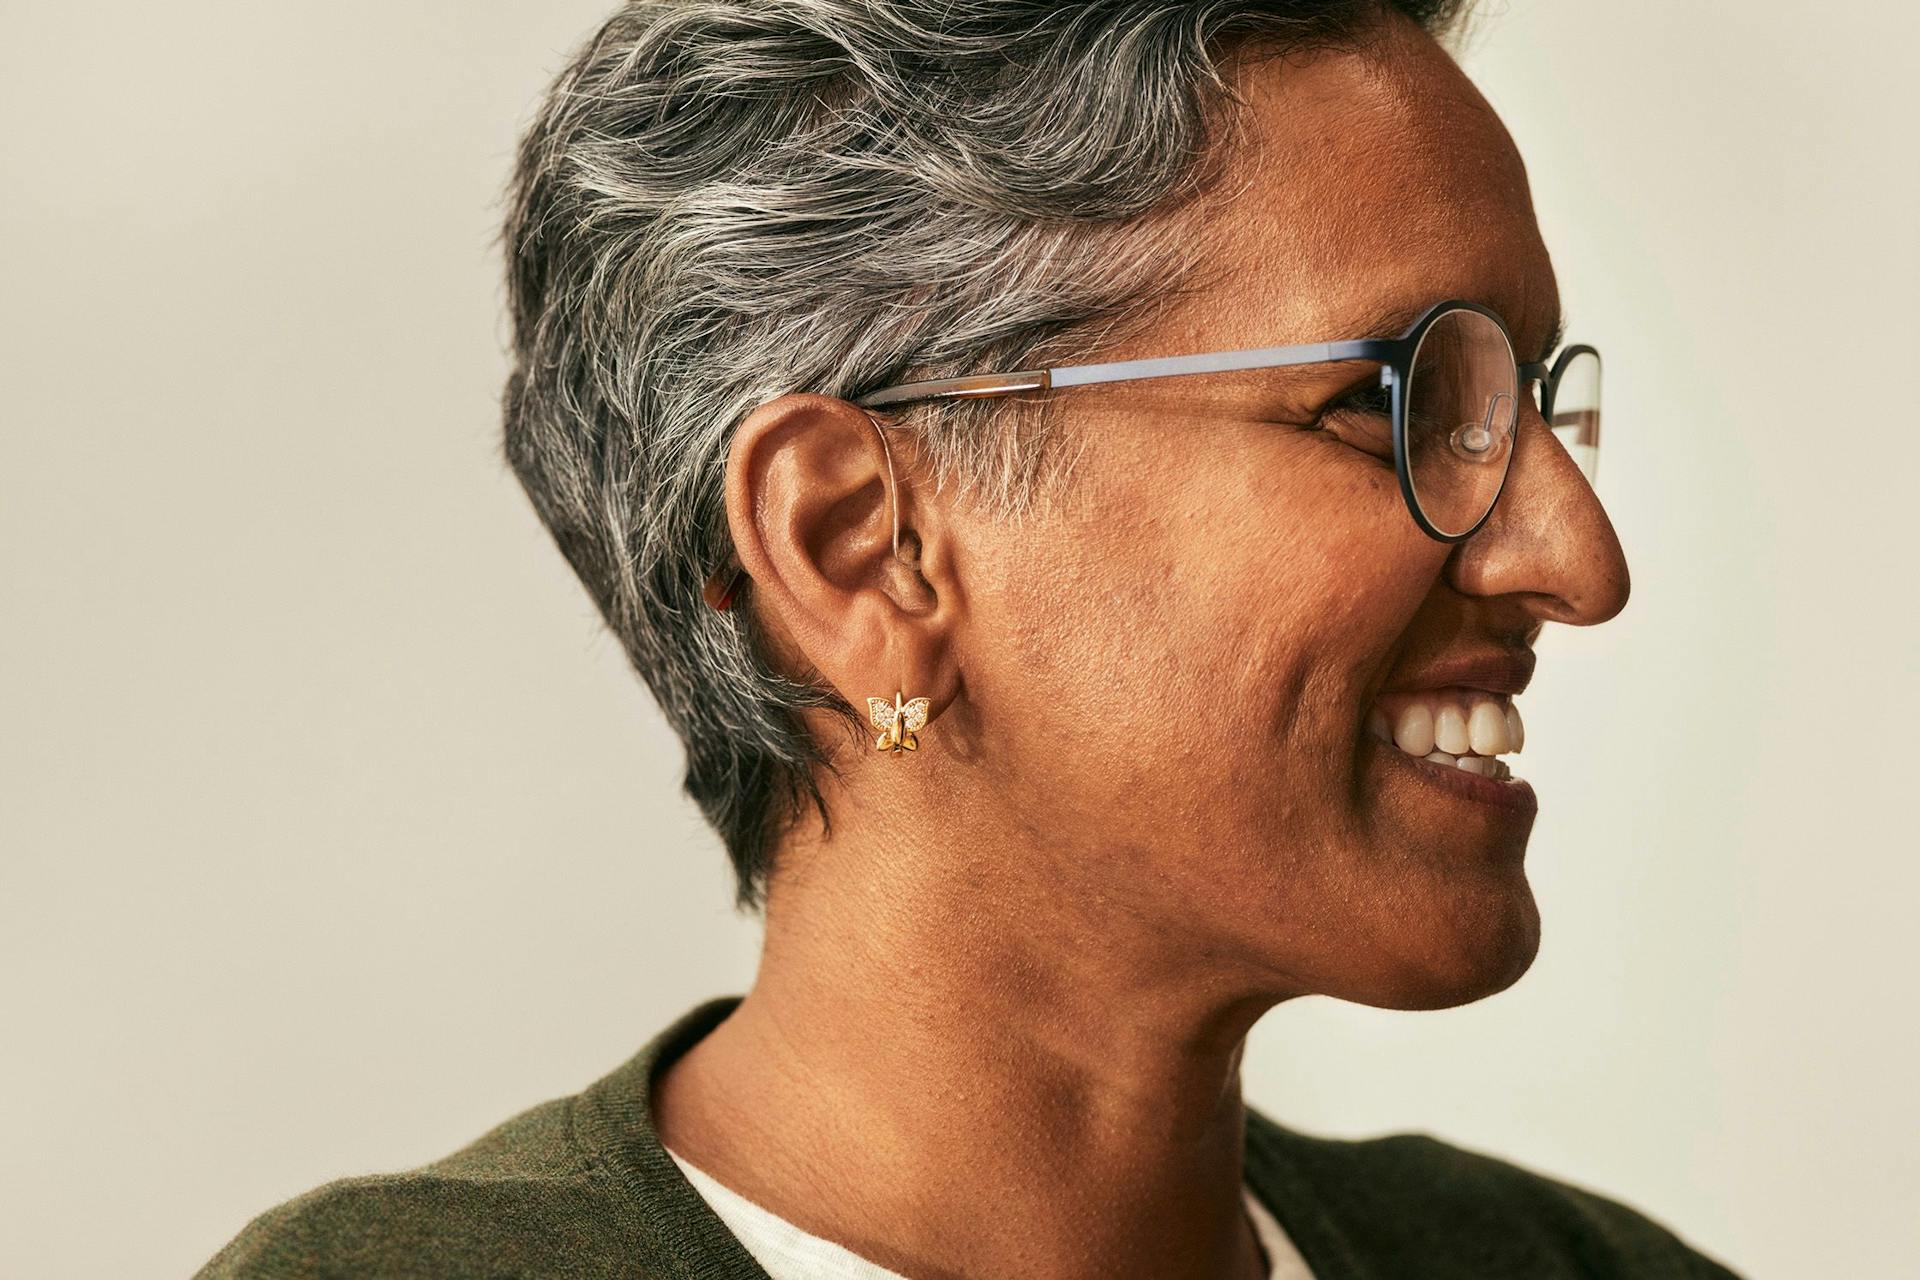 Kvinne med kort hår og briller i profil med høreapparater